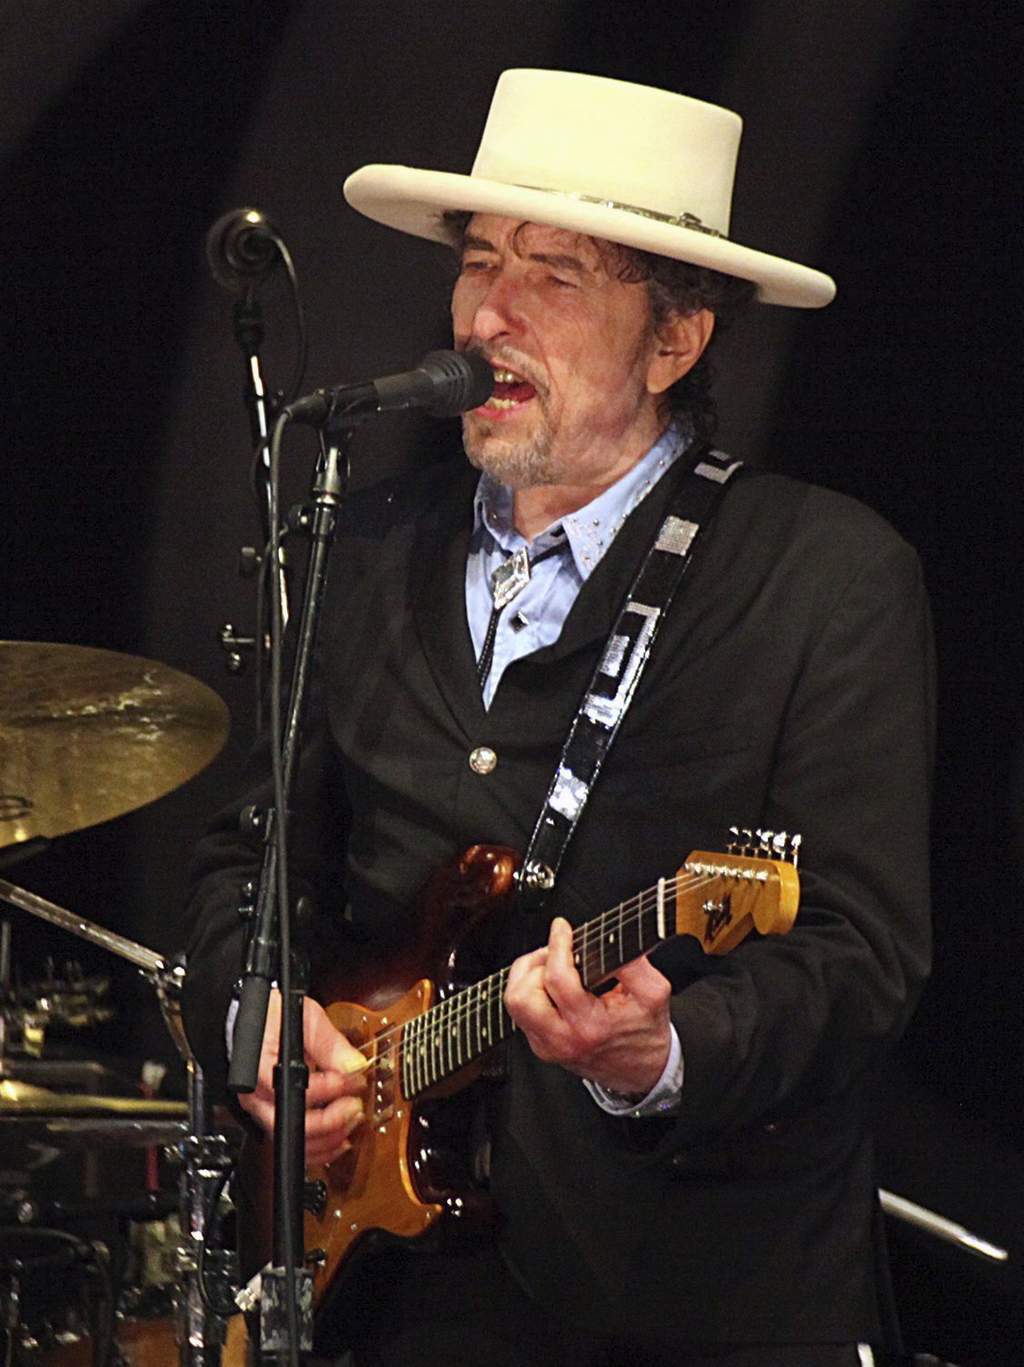  Dylan no ha hecho ningún comentario al respecto a pesar de haber ofrecido un concierto ante miles de seguidores en Las Vegas el mismo día del anuncio. (ARCHIVO)